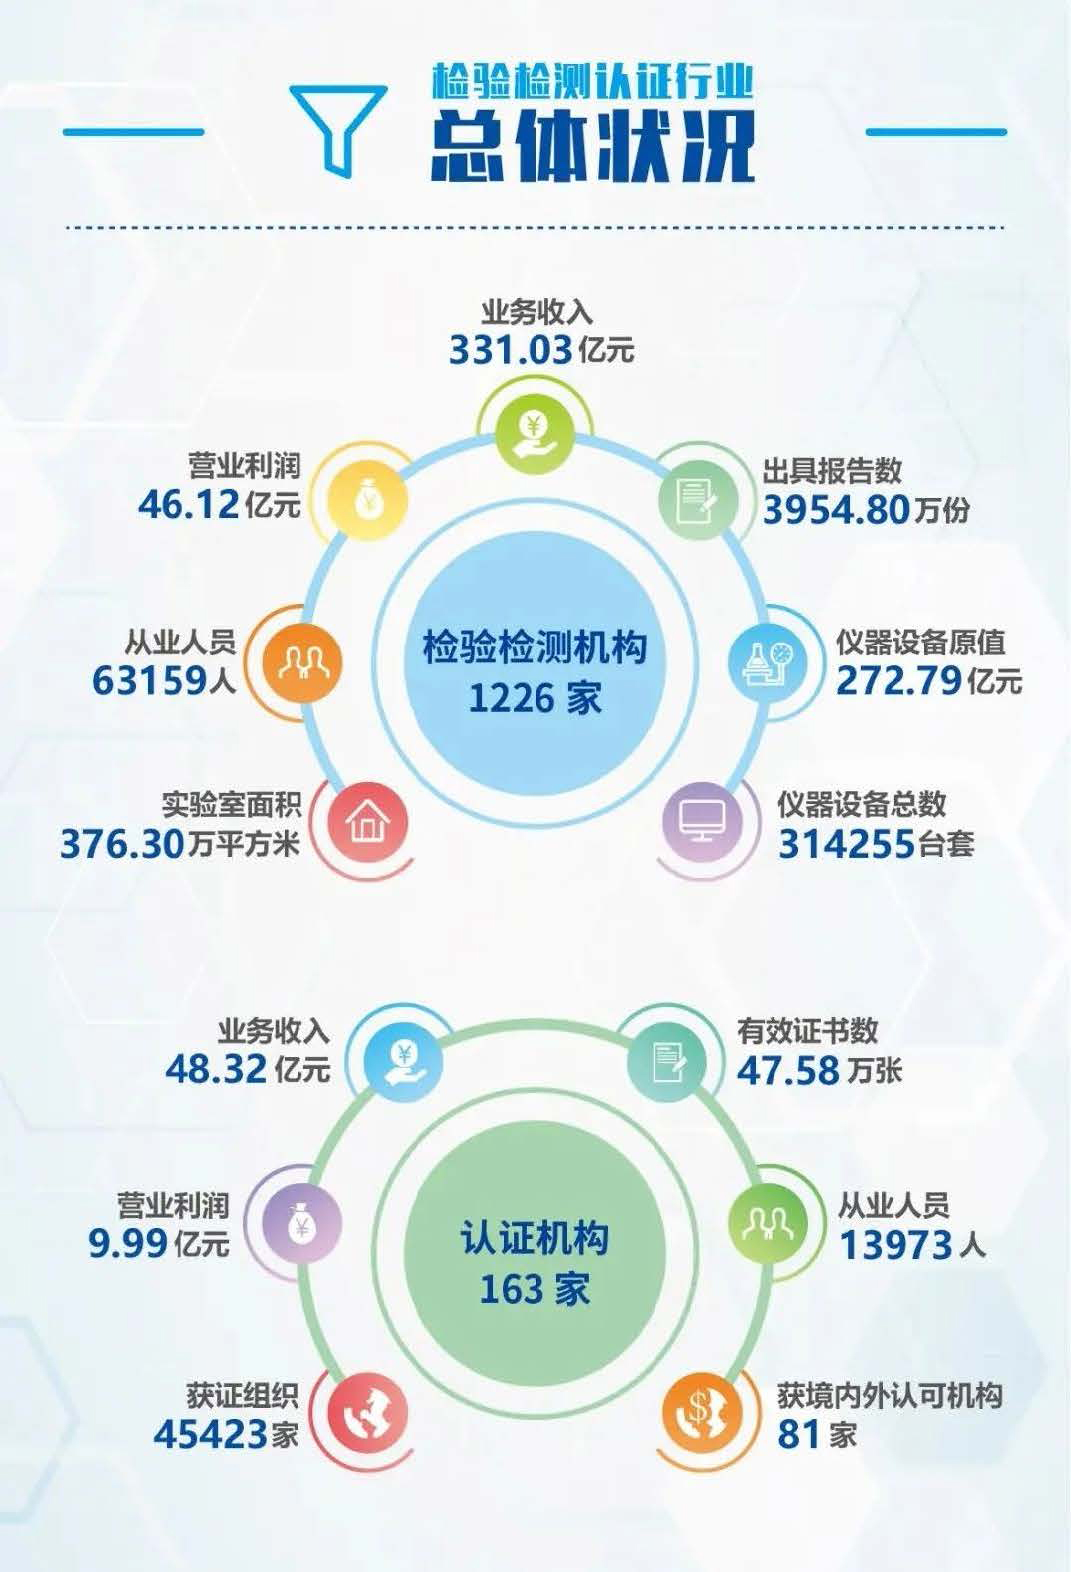 上海检验检测认证行业现状